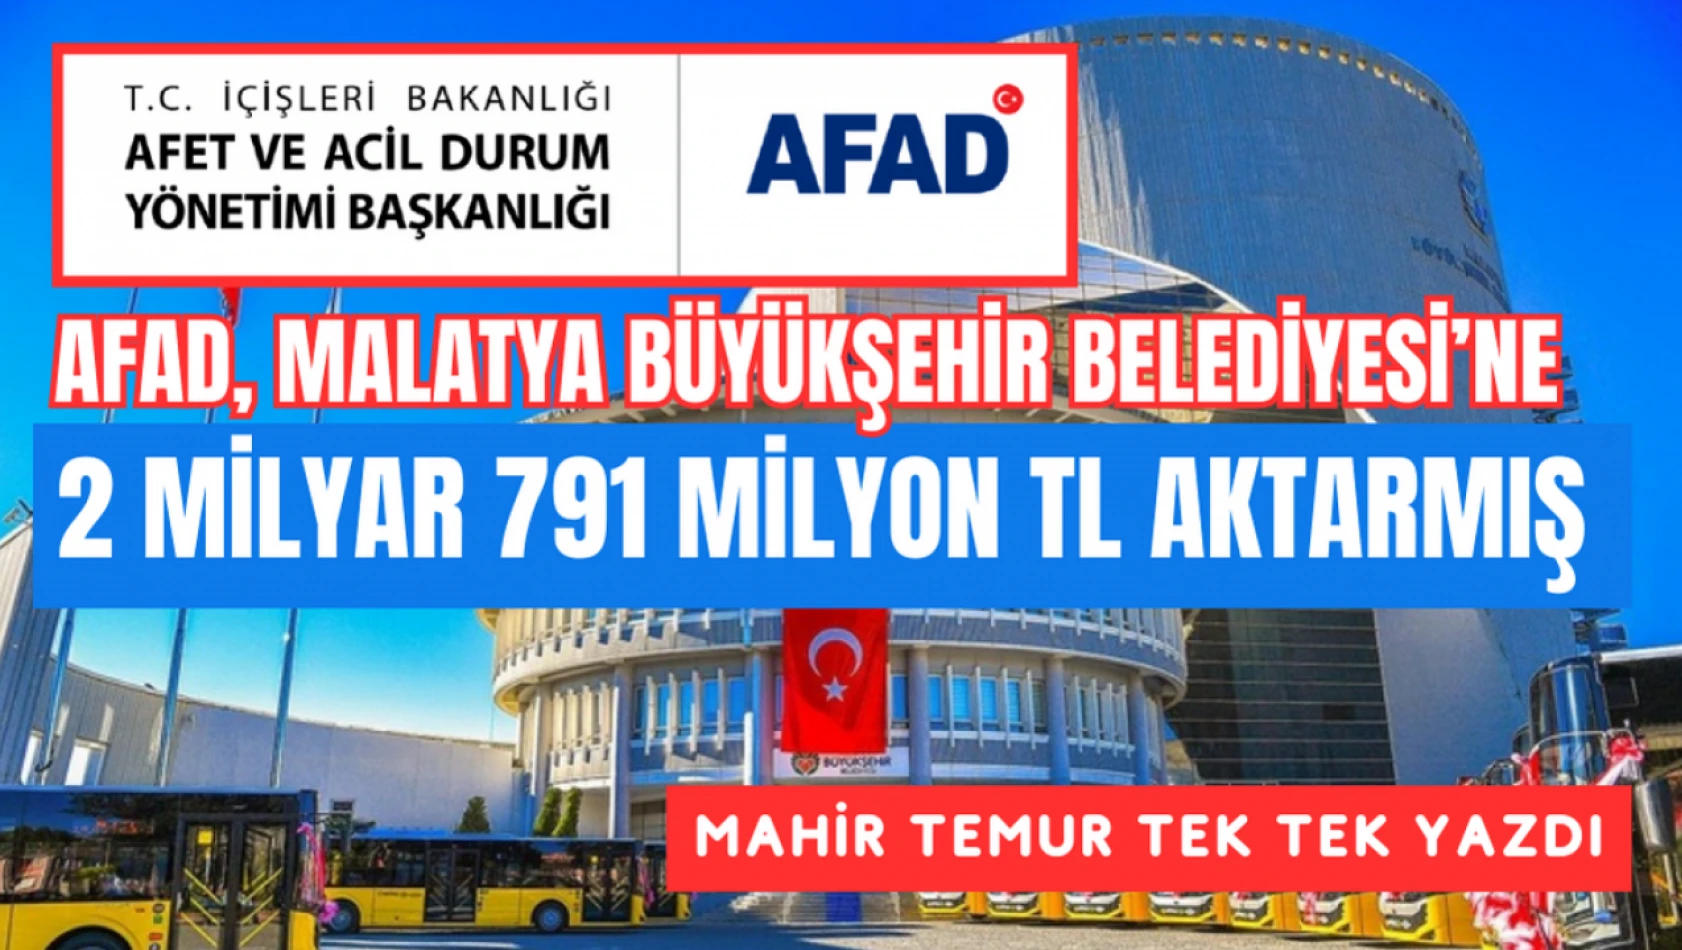 AFAD, Malatya Büyükşehir Belediyesi'ne 2 milyar 791 milyon TL aktarmış!